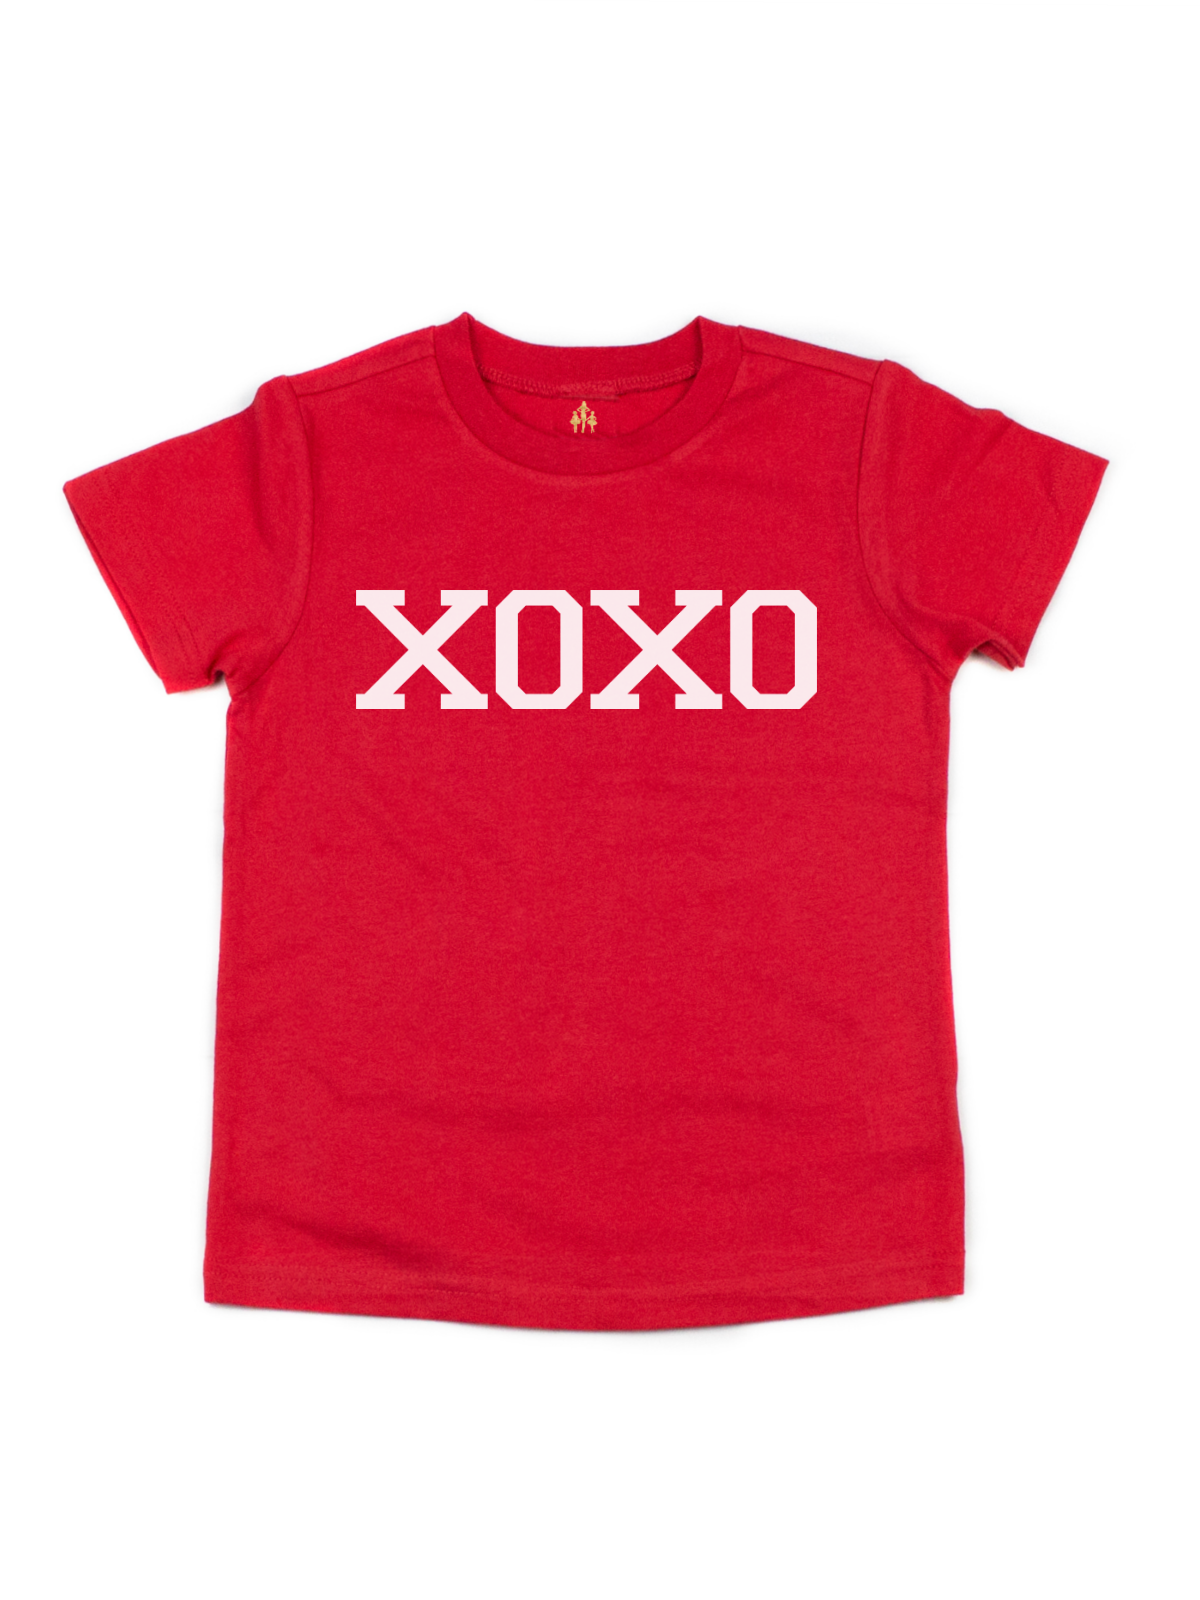 XOXO Kids Short Sleeve Valentine's Day Shirt